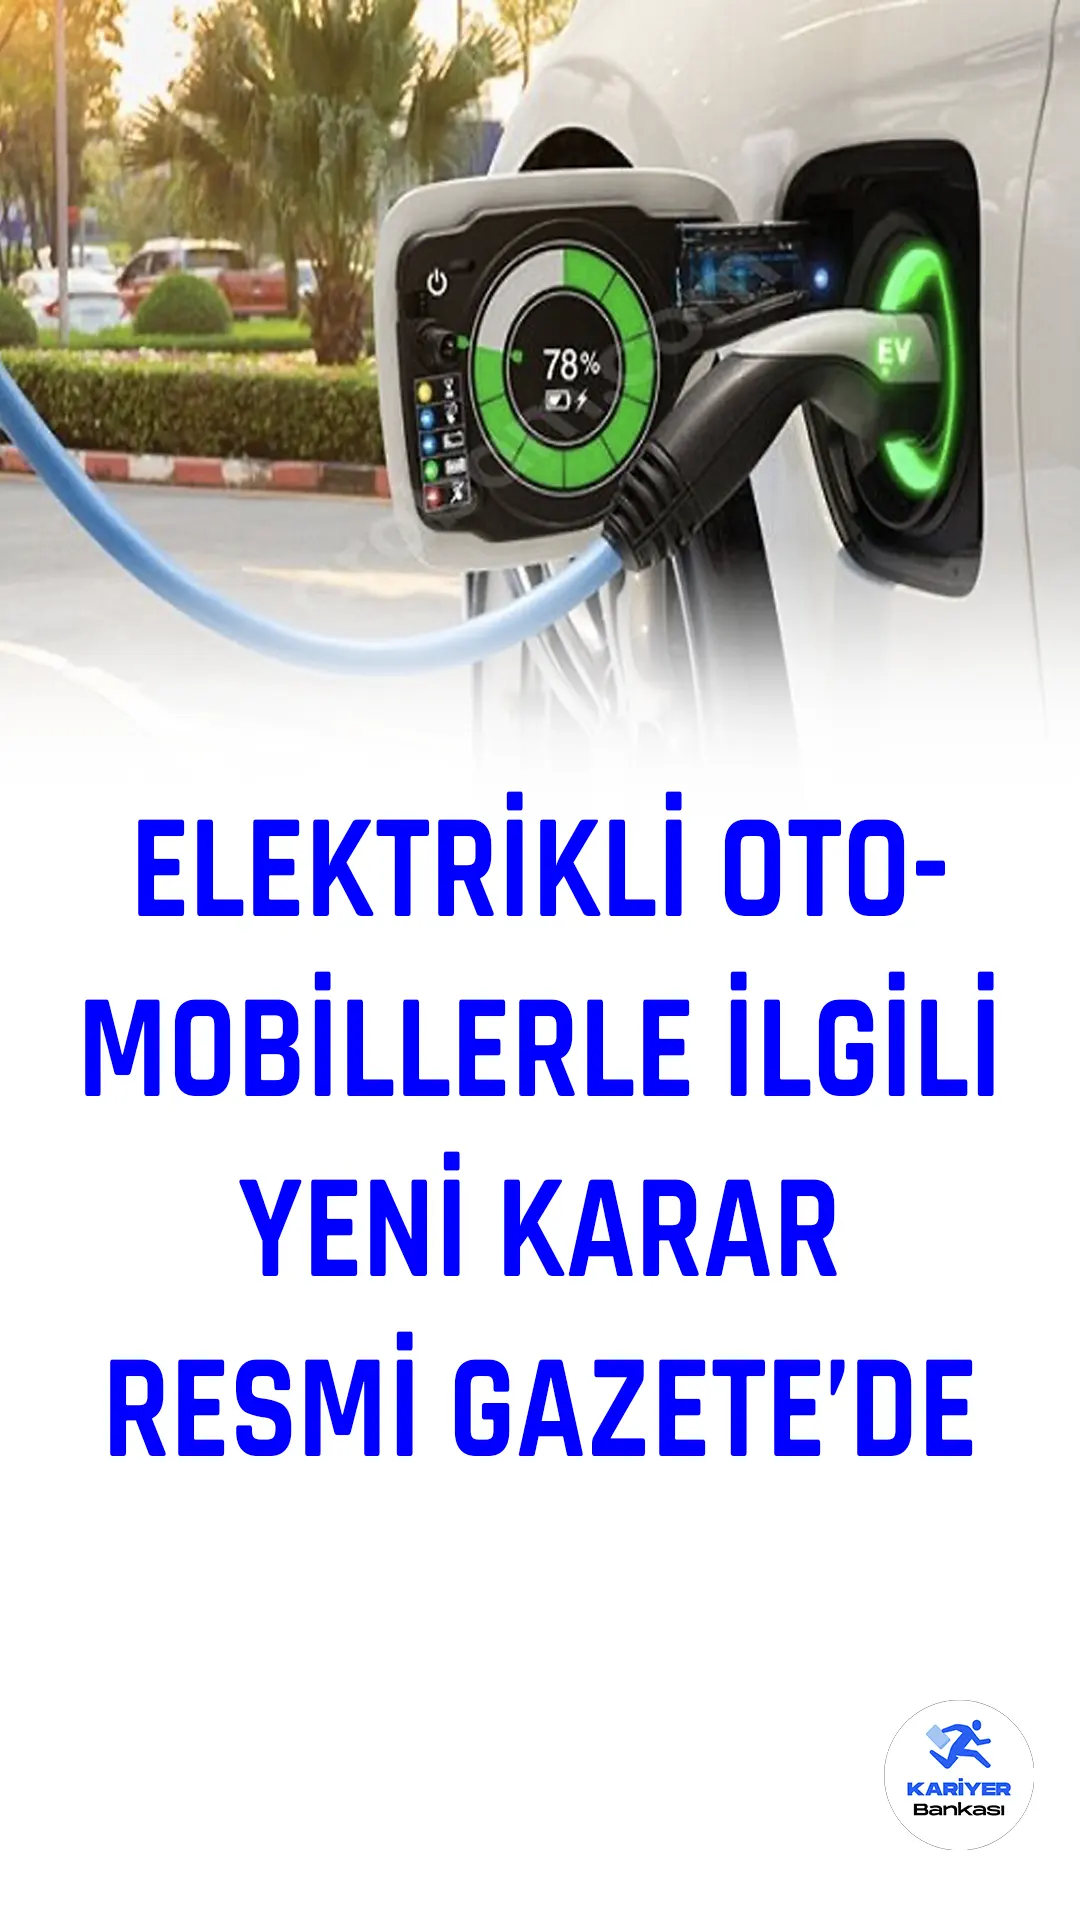 Resmi Gazete'de bugün yayımlanan kararla sadece elektrik motorlu olan binek otomobiller için ÖTV oranlarına esas matrahlarında değişikliğe gidildi.